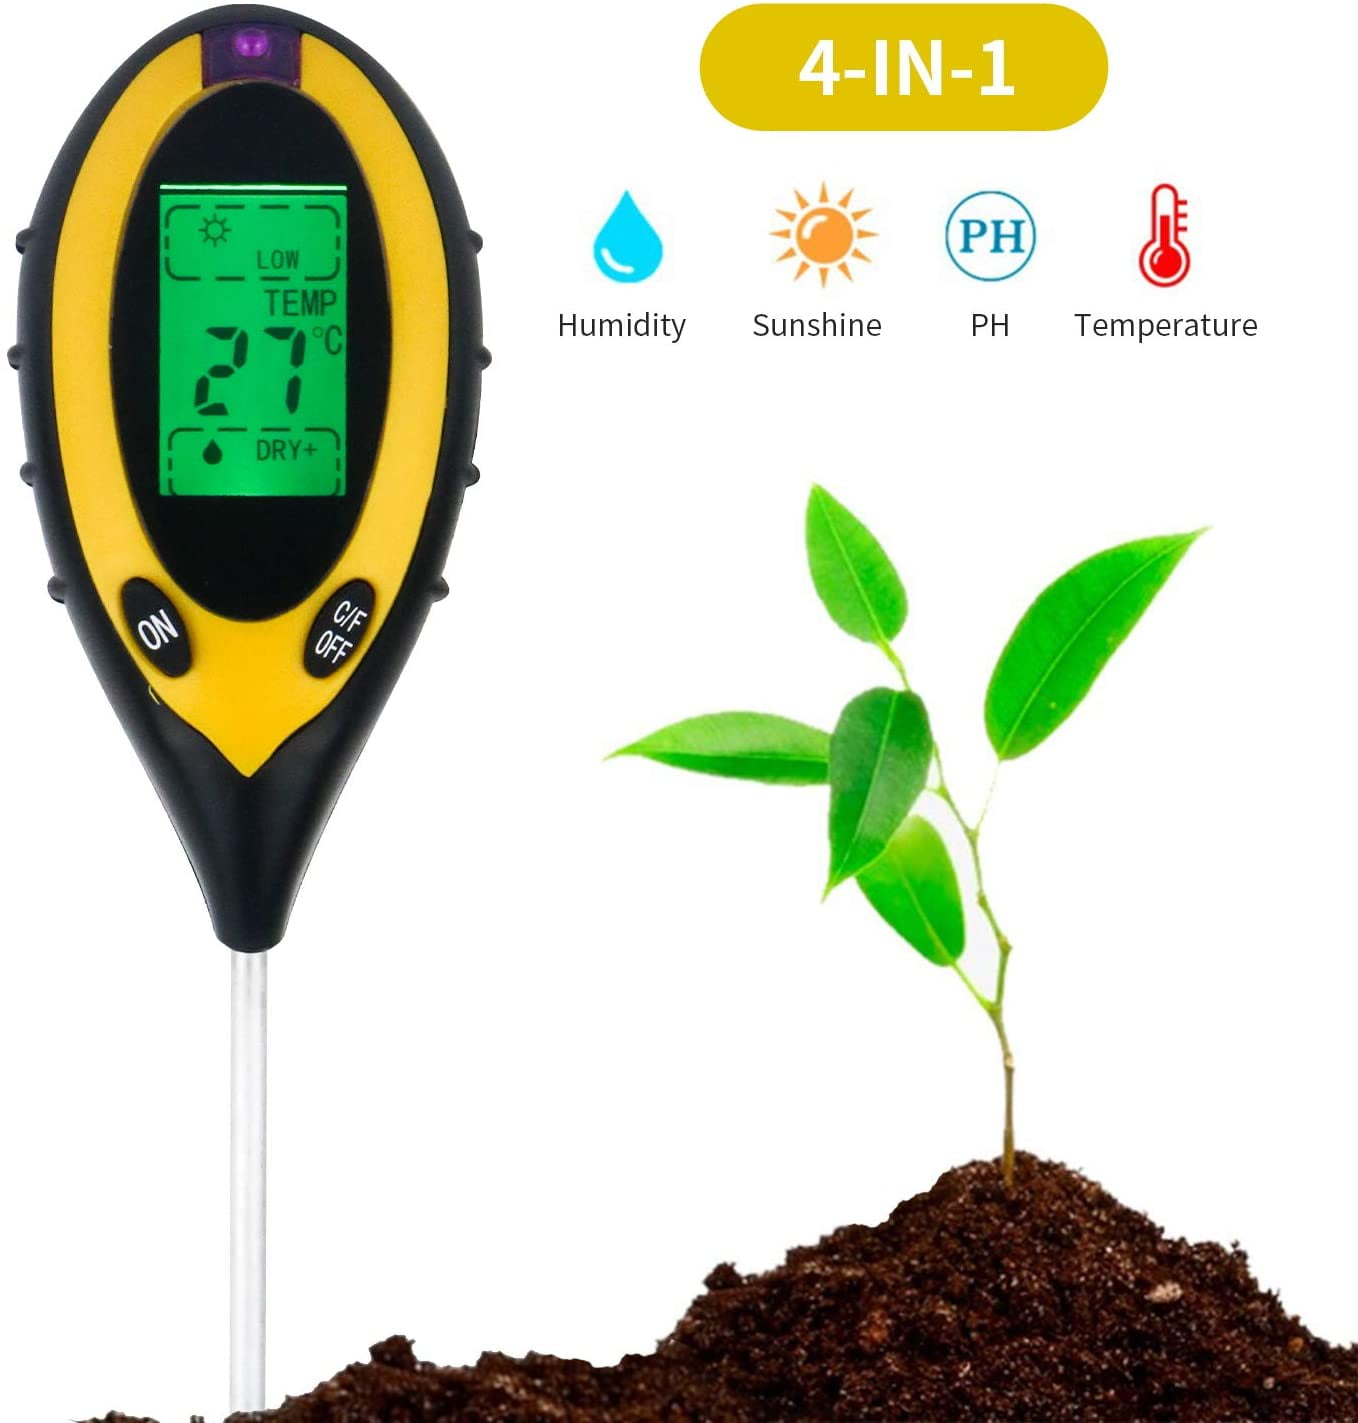 4in1 Soil PH Tester Water Moisture Light Test Meter Garden Plant Seeding Tool US 